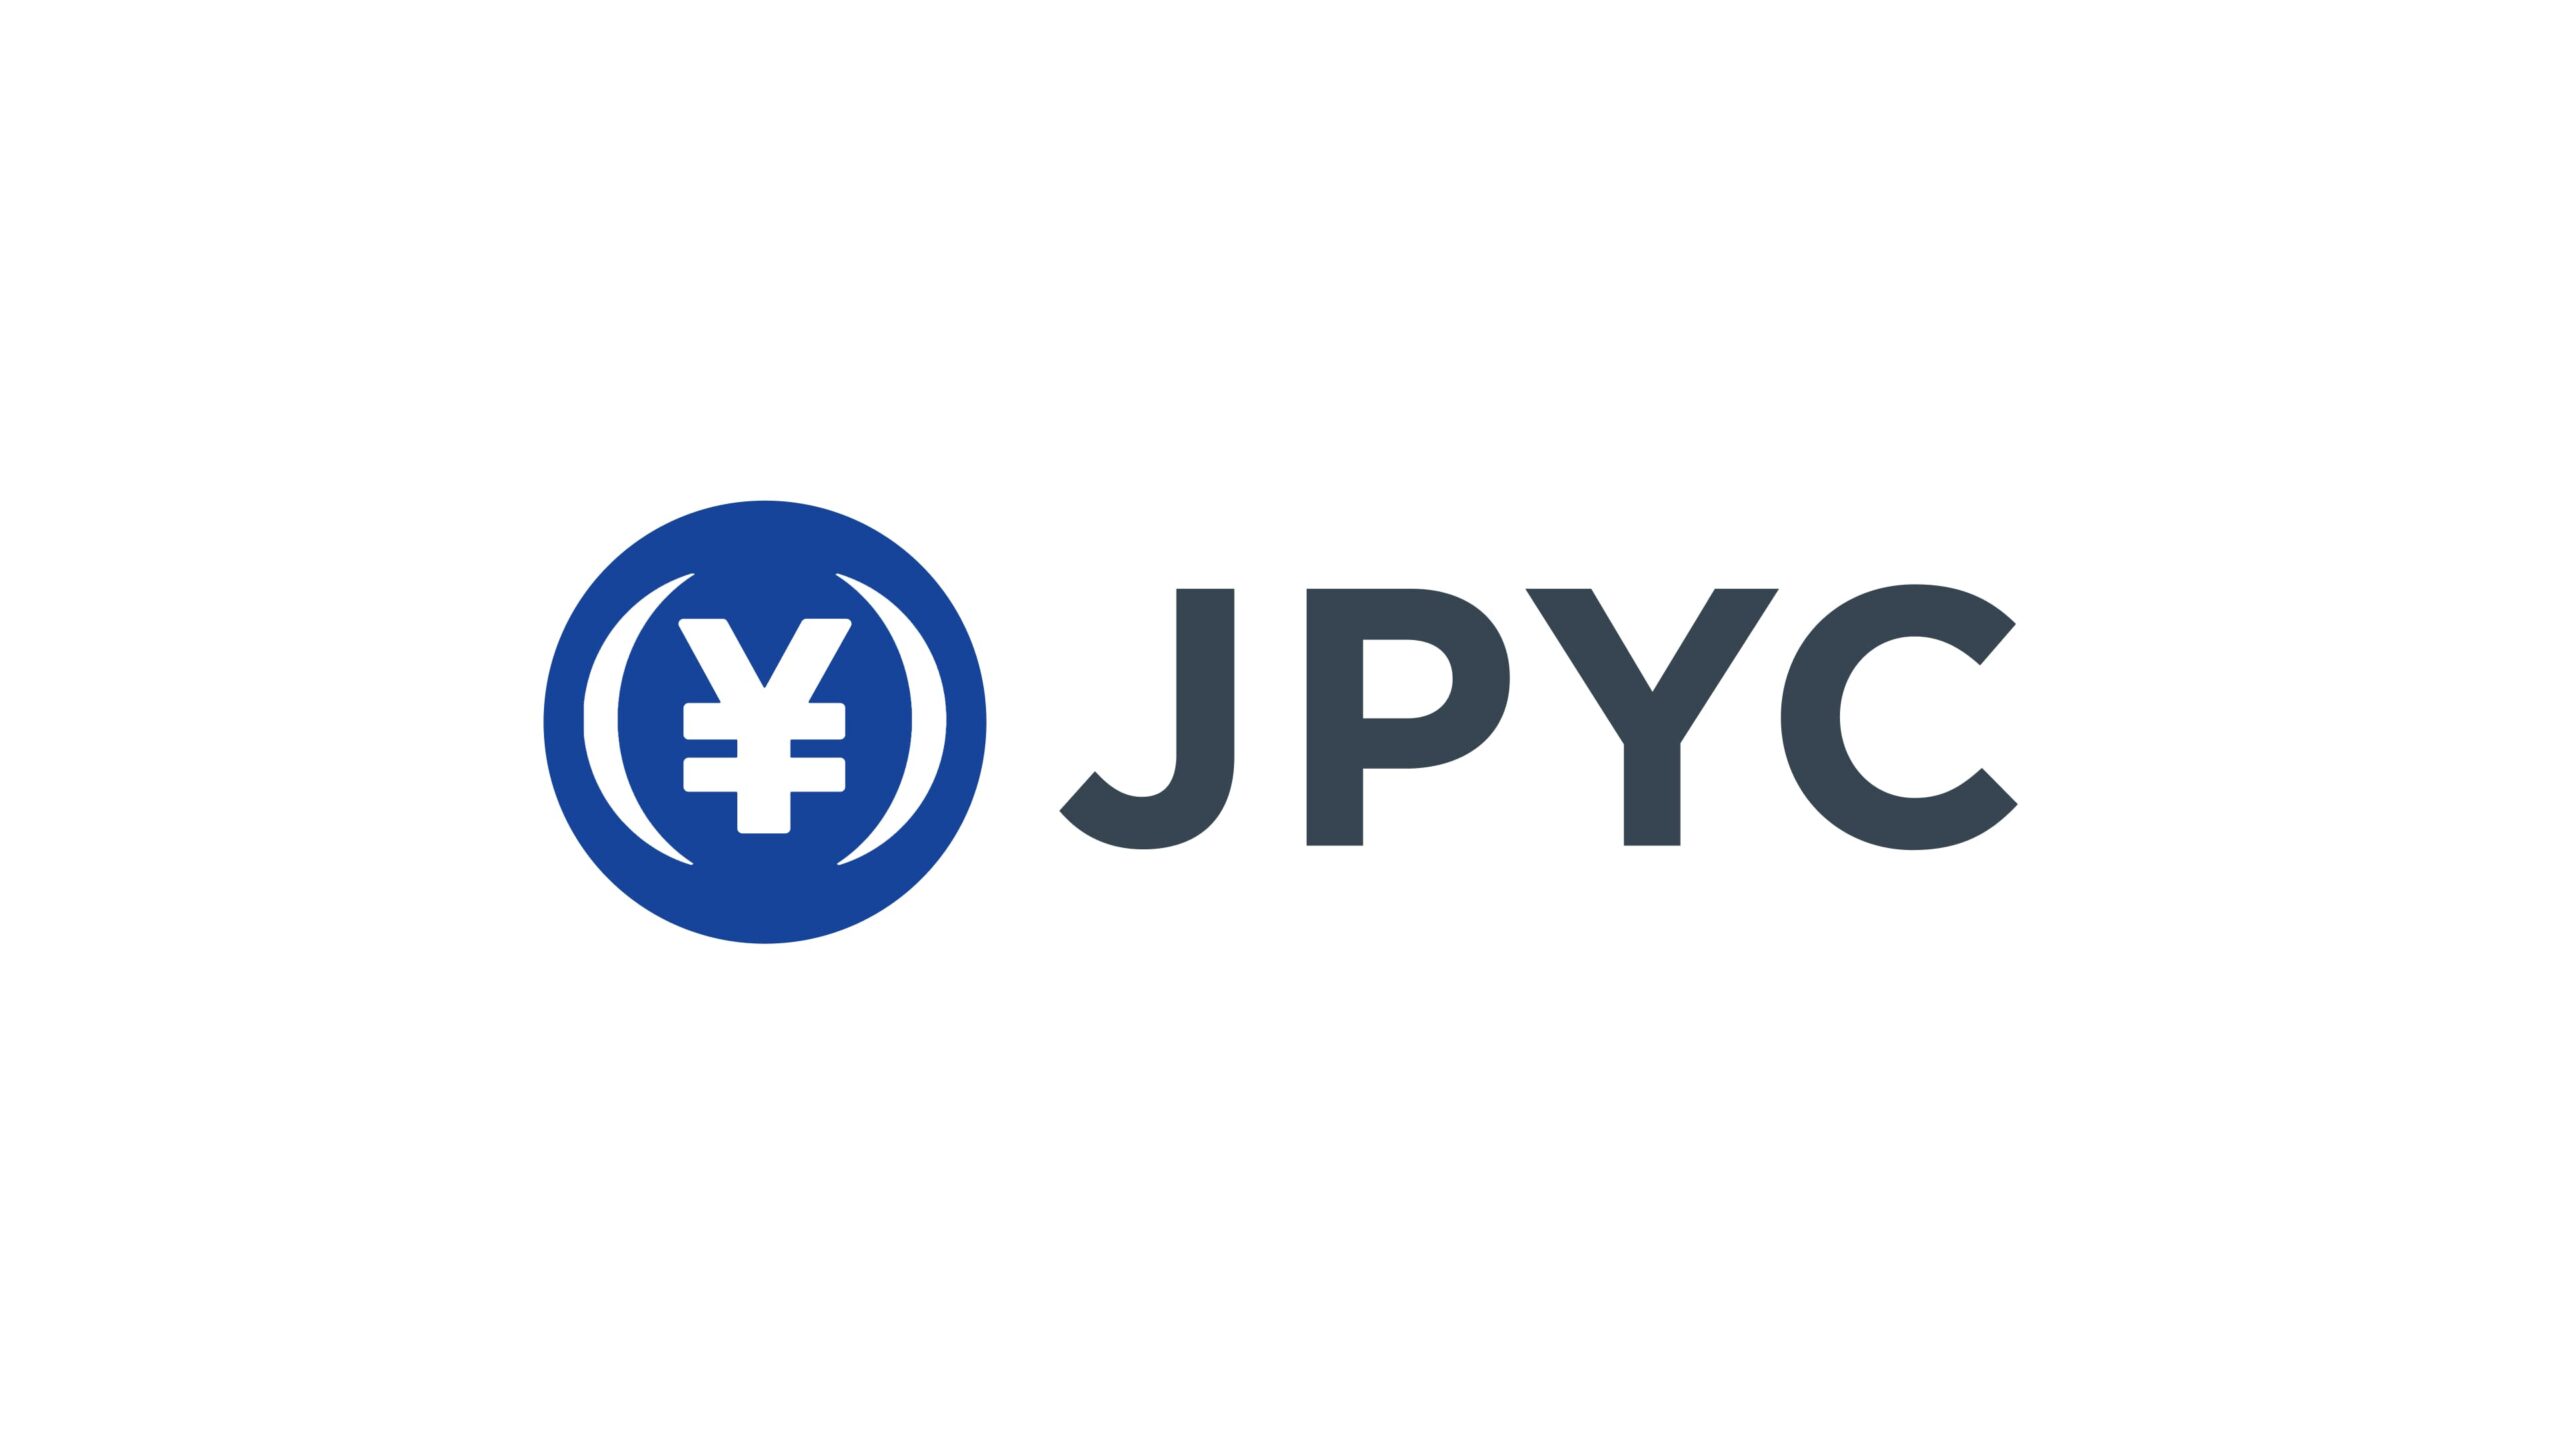 日本円向けステーブルコインJPYCを提供するJPYC株式会社がユナイテッド株式会社より資金調達